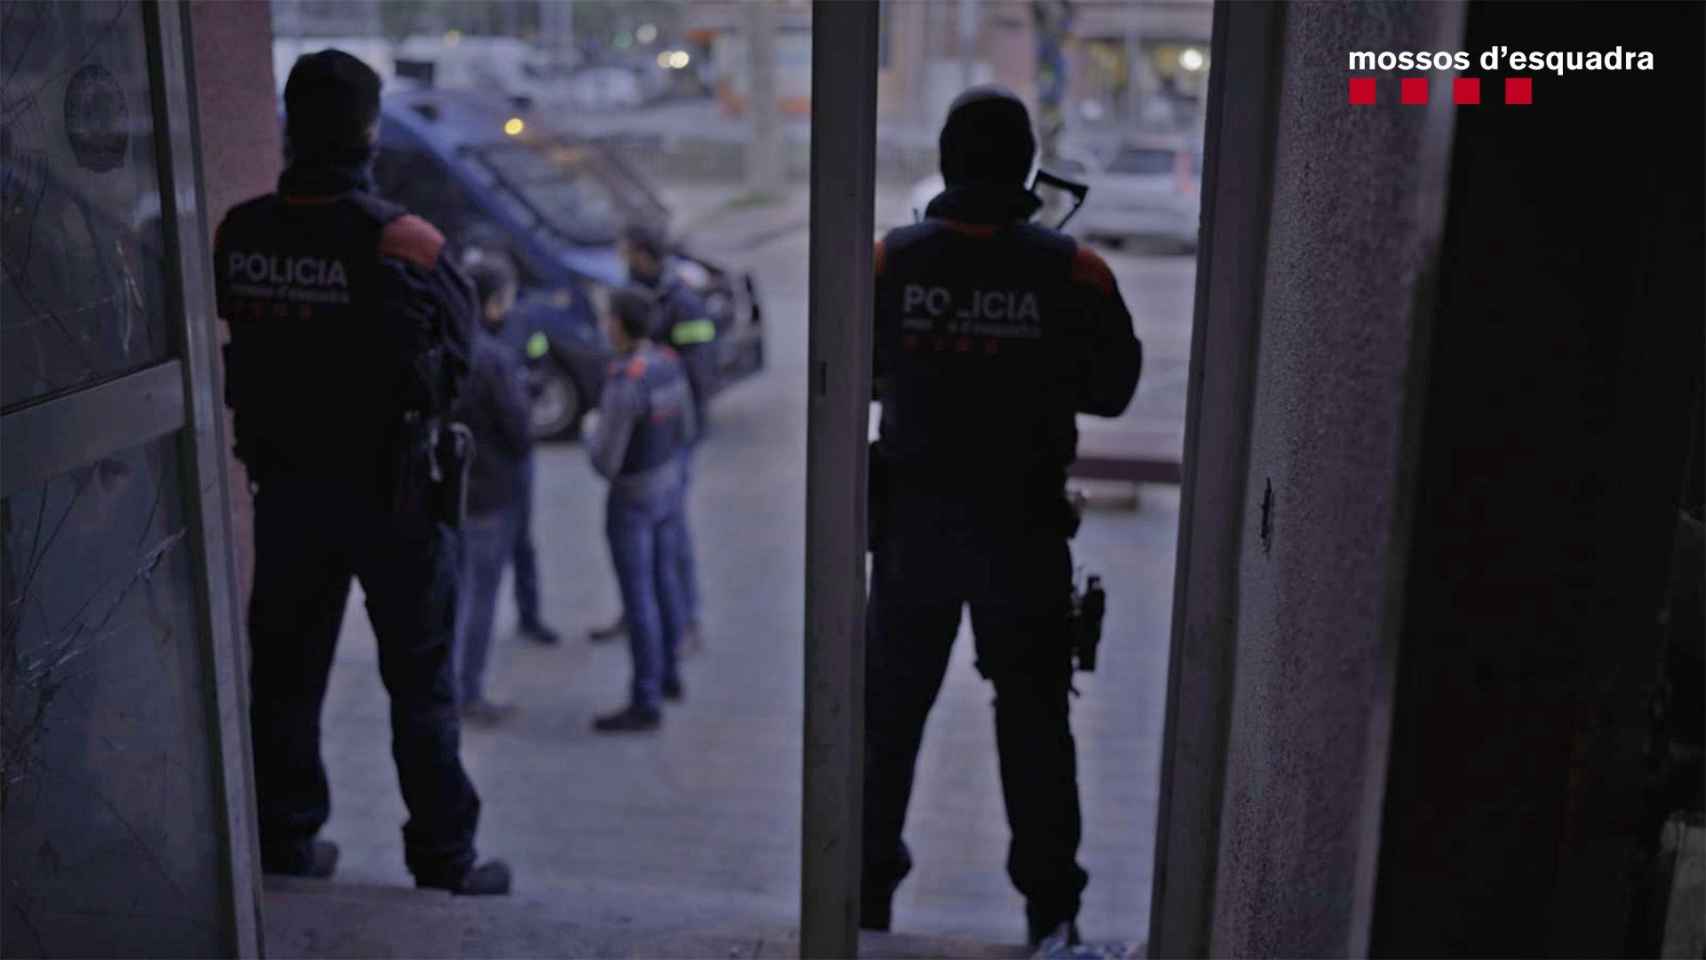 Dos mossos d'esquadra durante el operativo del martes / MOSSOS